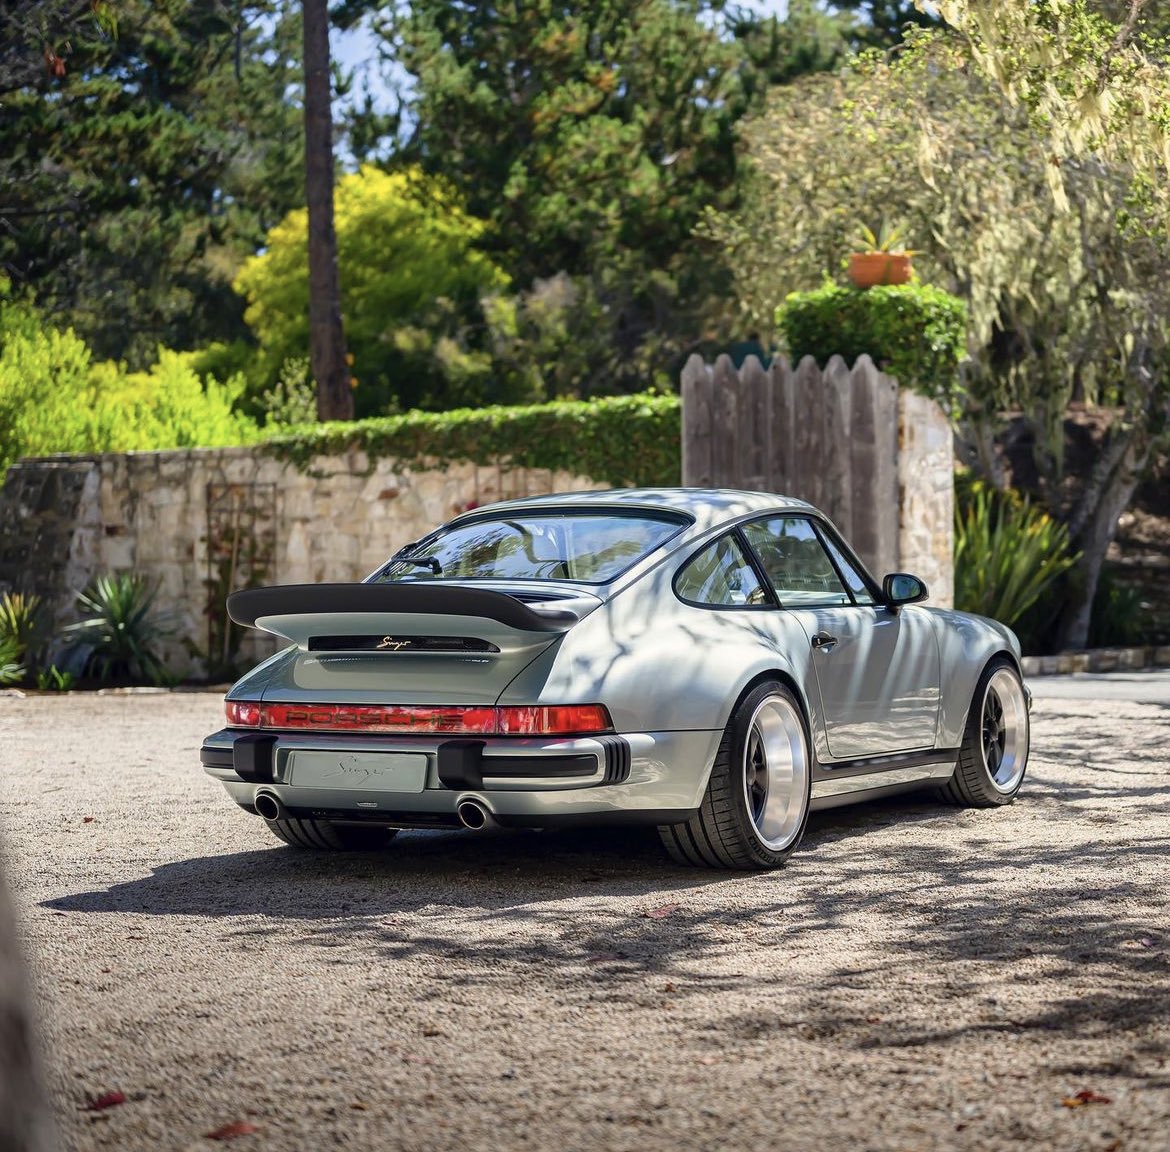 911 at its finest 🔥 
#singervehicledesign
#Porsche